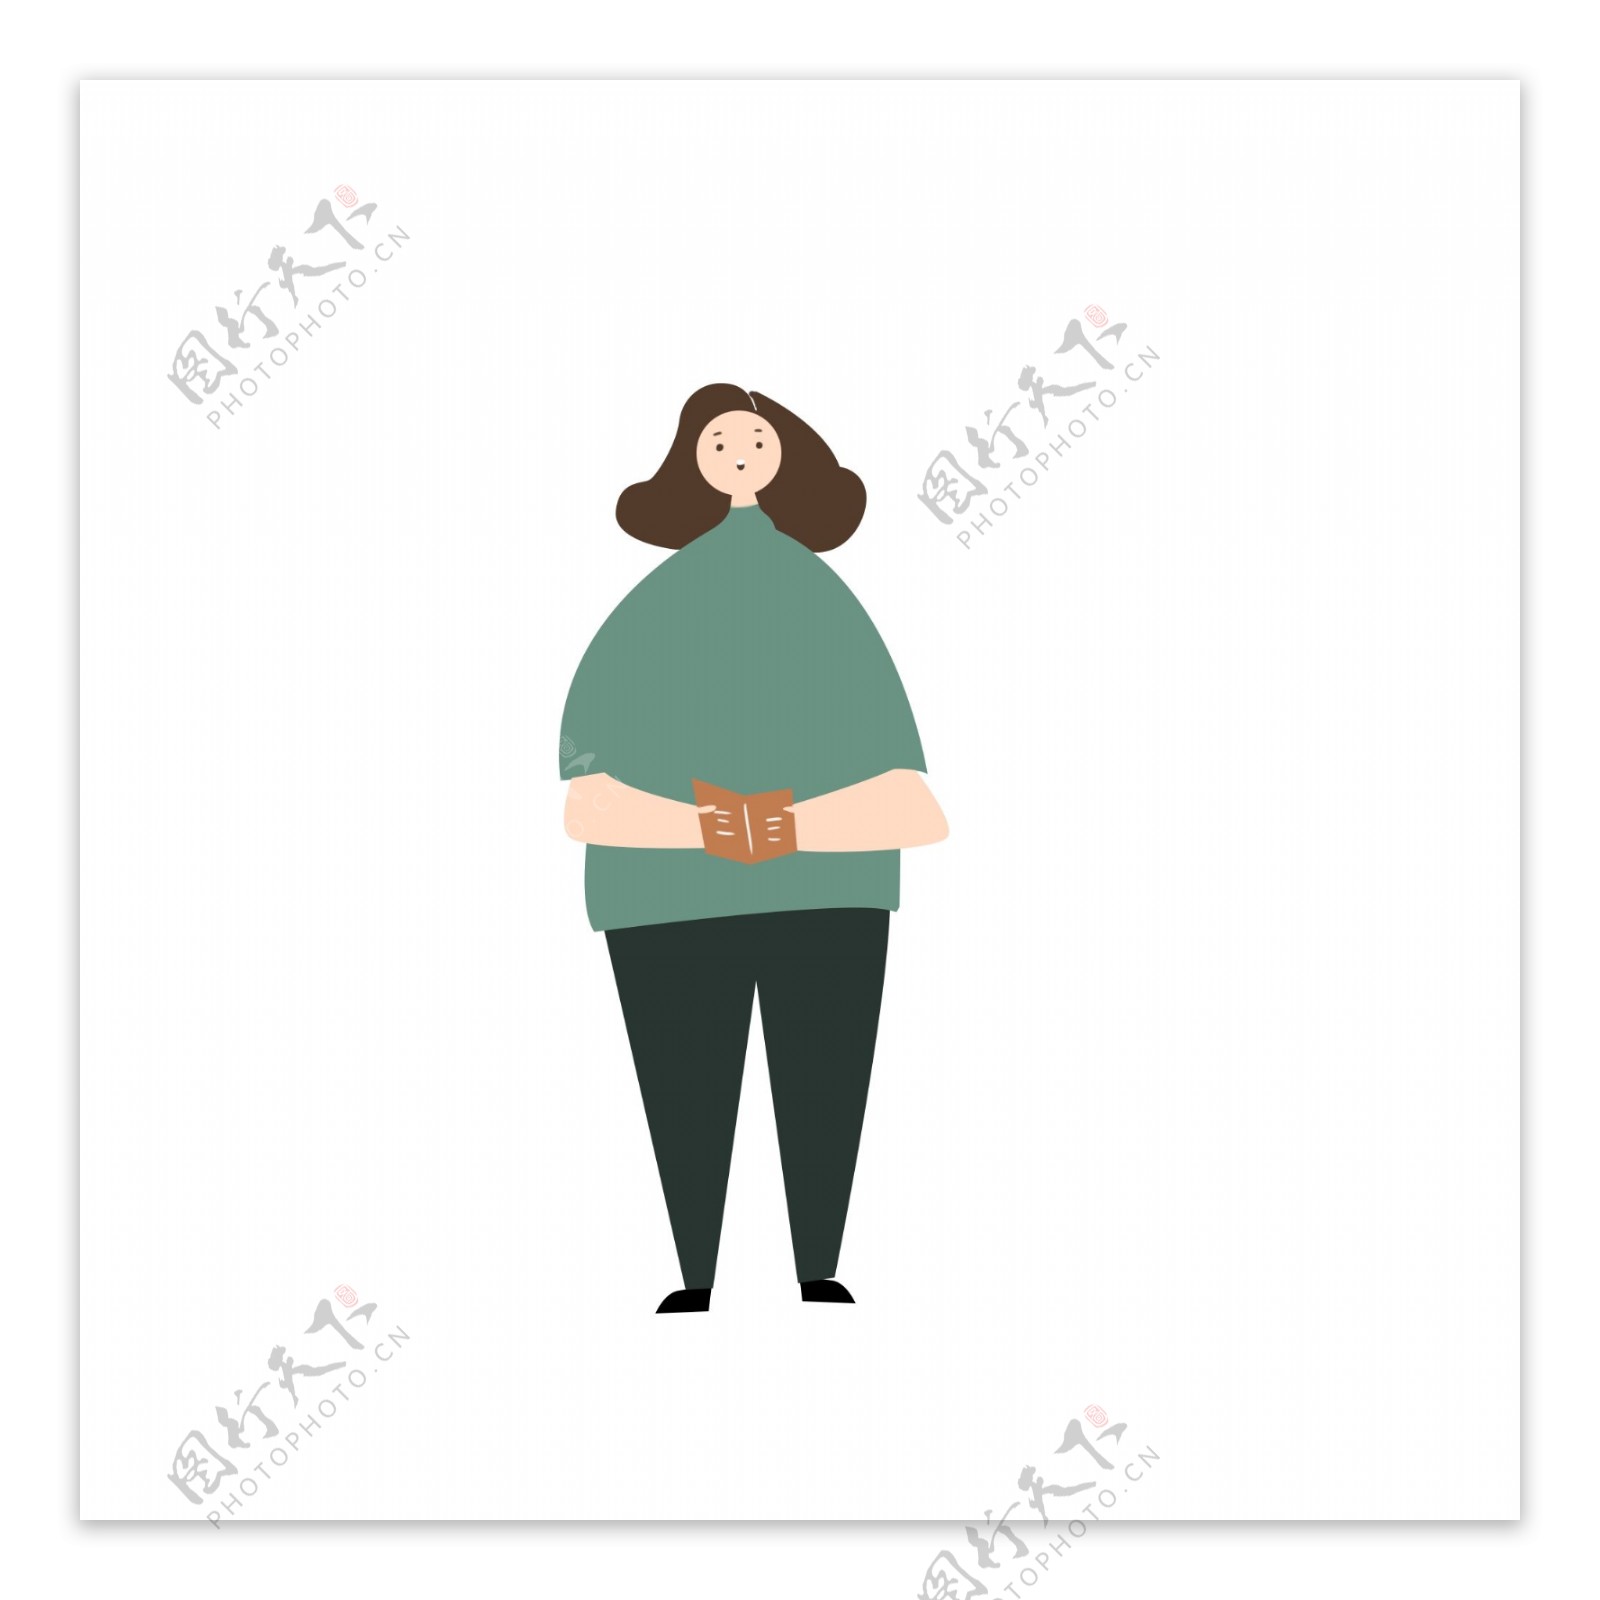 胖胖的女人拿报纸站立人物插图元素